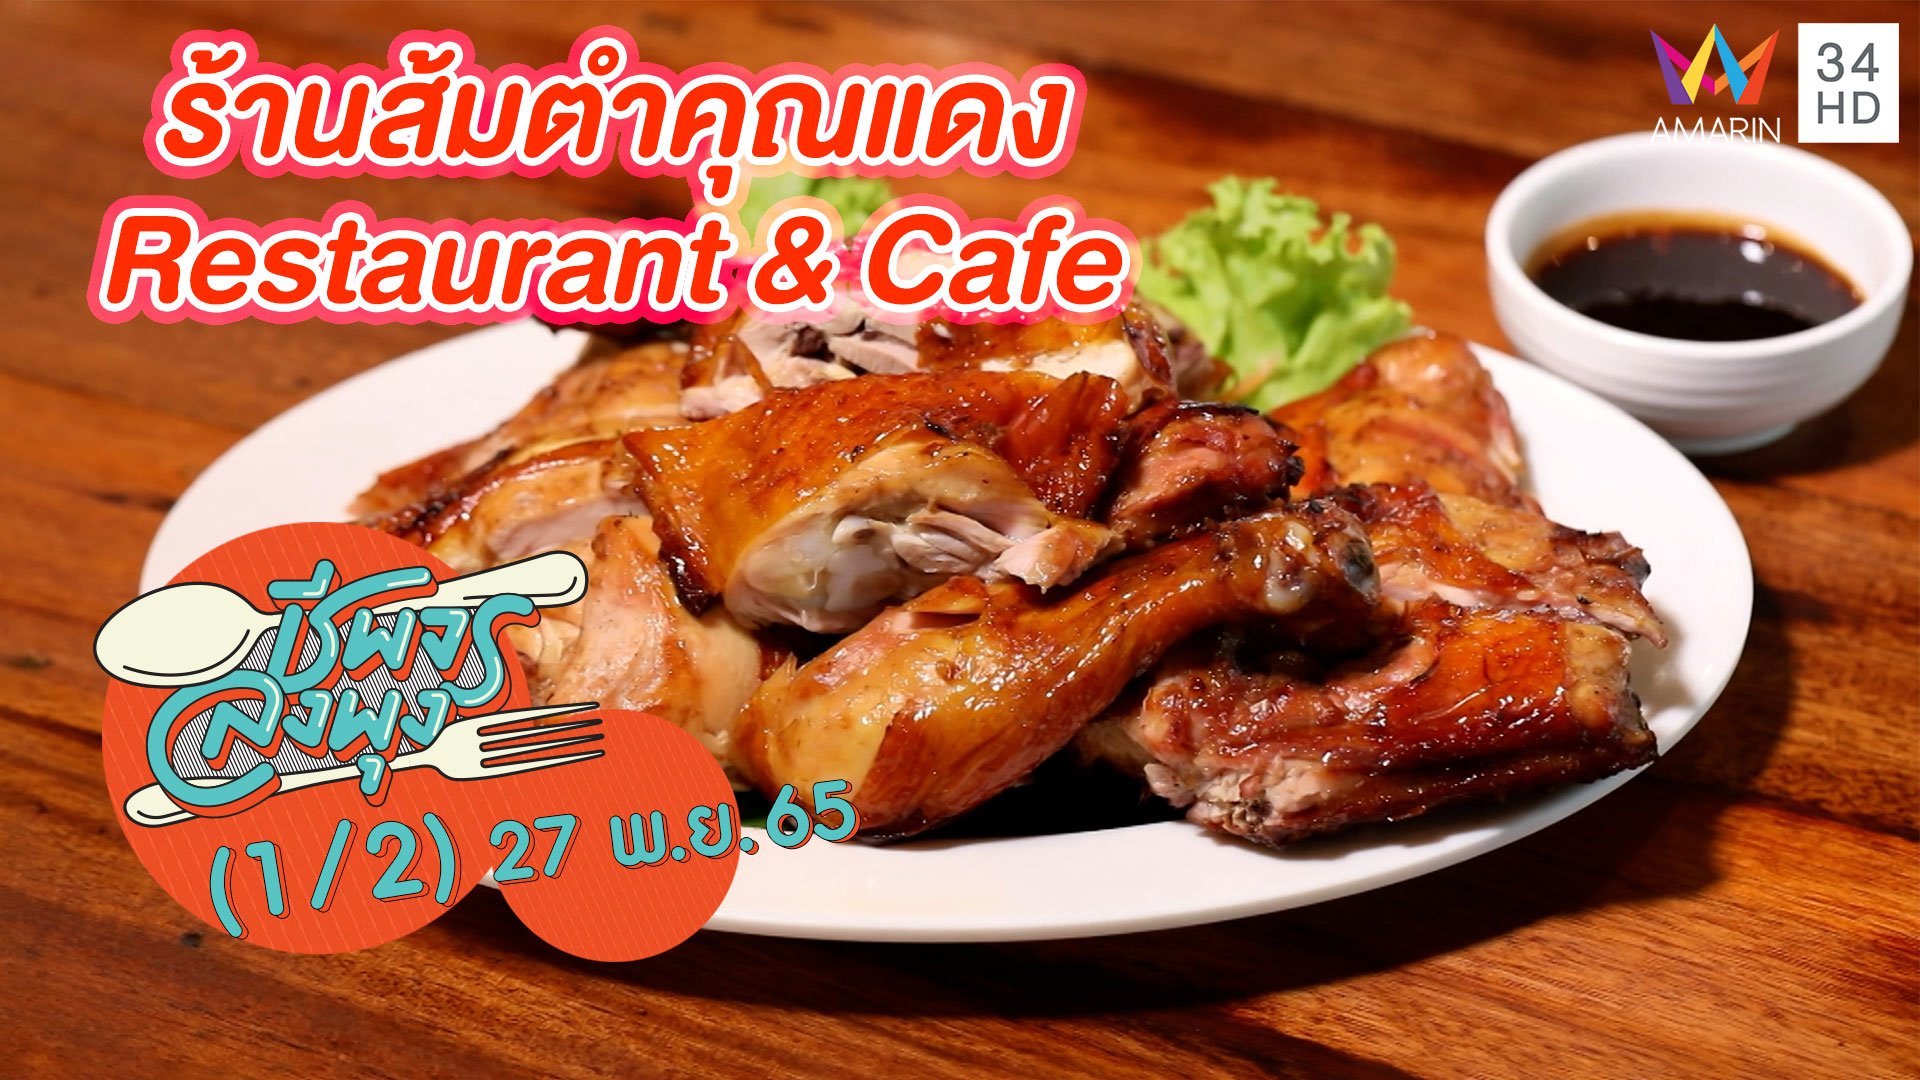 คาเฟ่สไตล์ลูกทุ่งย้อนยุค @ ร้านส้มตำคุณแดง Restaurant & Cafe | ชีพจรลงพุง | 27 พ.ย. 65 (1/2) | AMARIN TVHD34